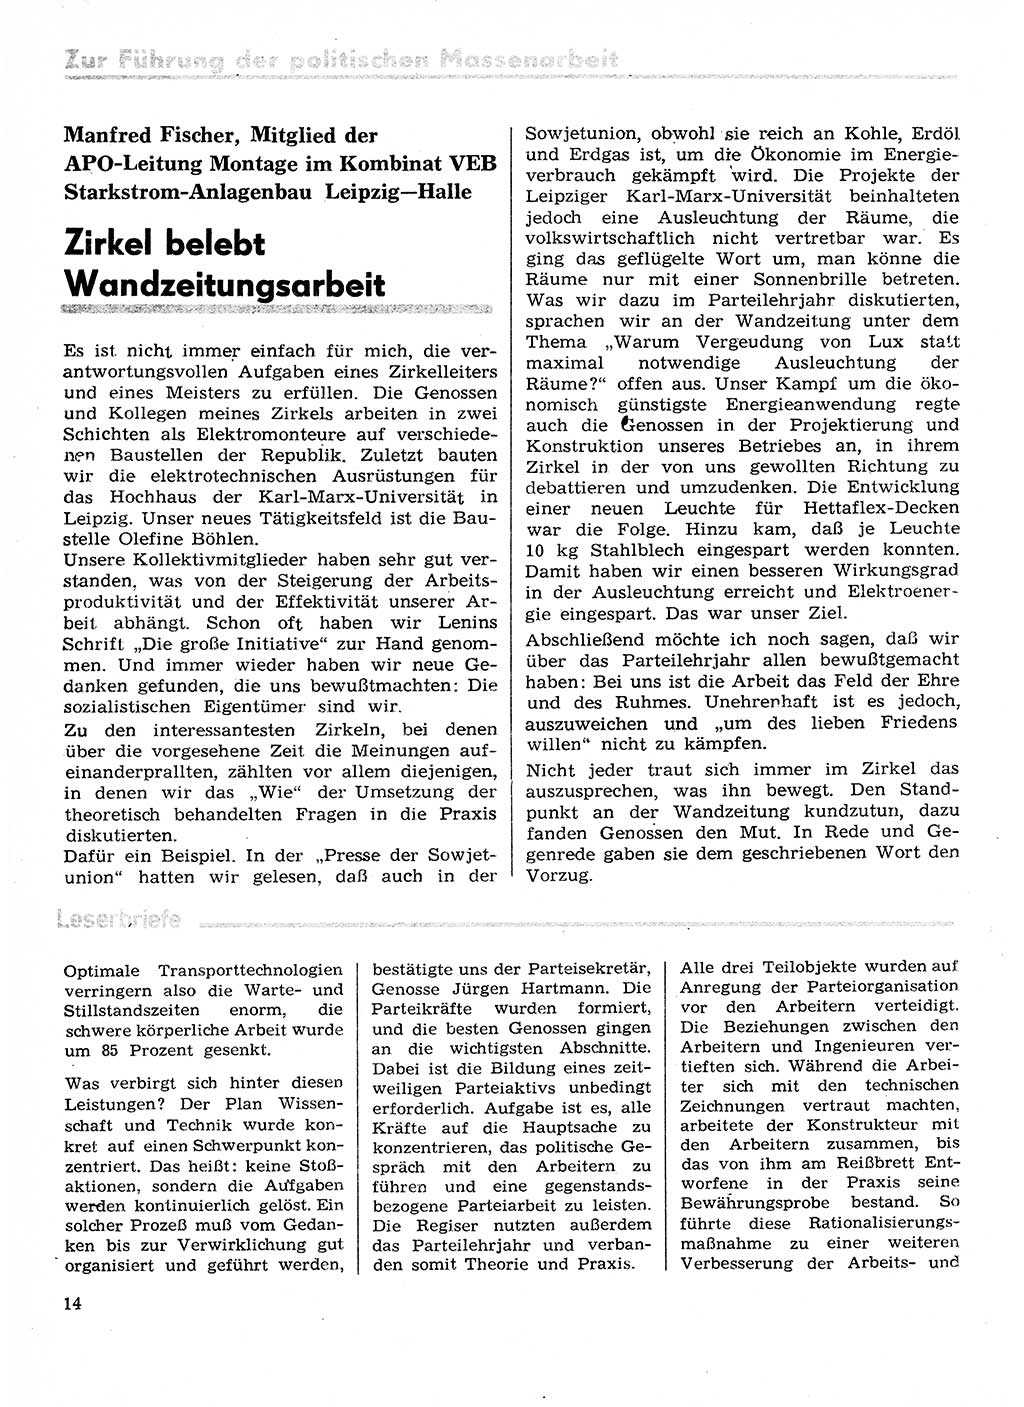 Neuer Weg (NW), Organ des Zentralkomitees (ZK) der SED (Sozialistische Einheitspartei Deutschlands) für Fragen des Parteilebens, 29. Jahrgang [Deutsche Demokratische Republik (DDR)] 1974, Seite 14 (NW ZK SED DDR 1974, S. 14)